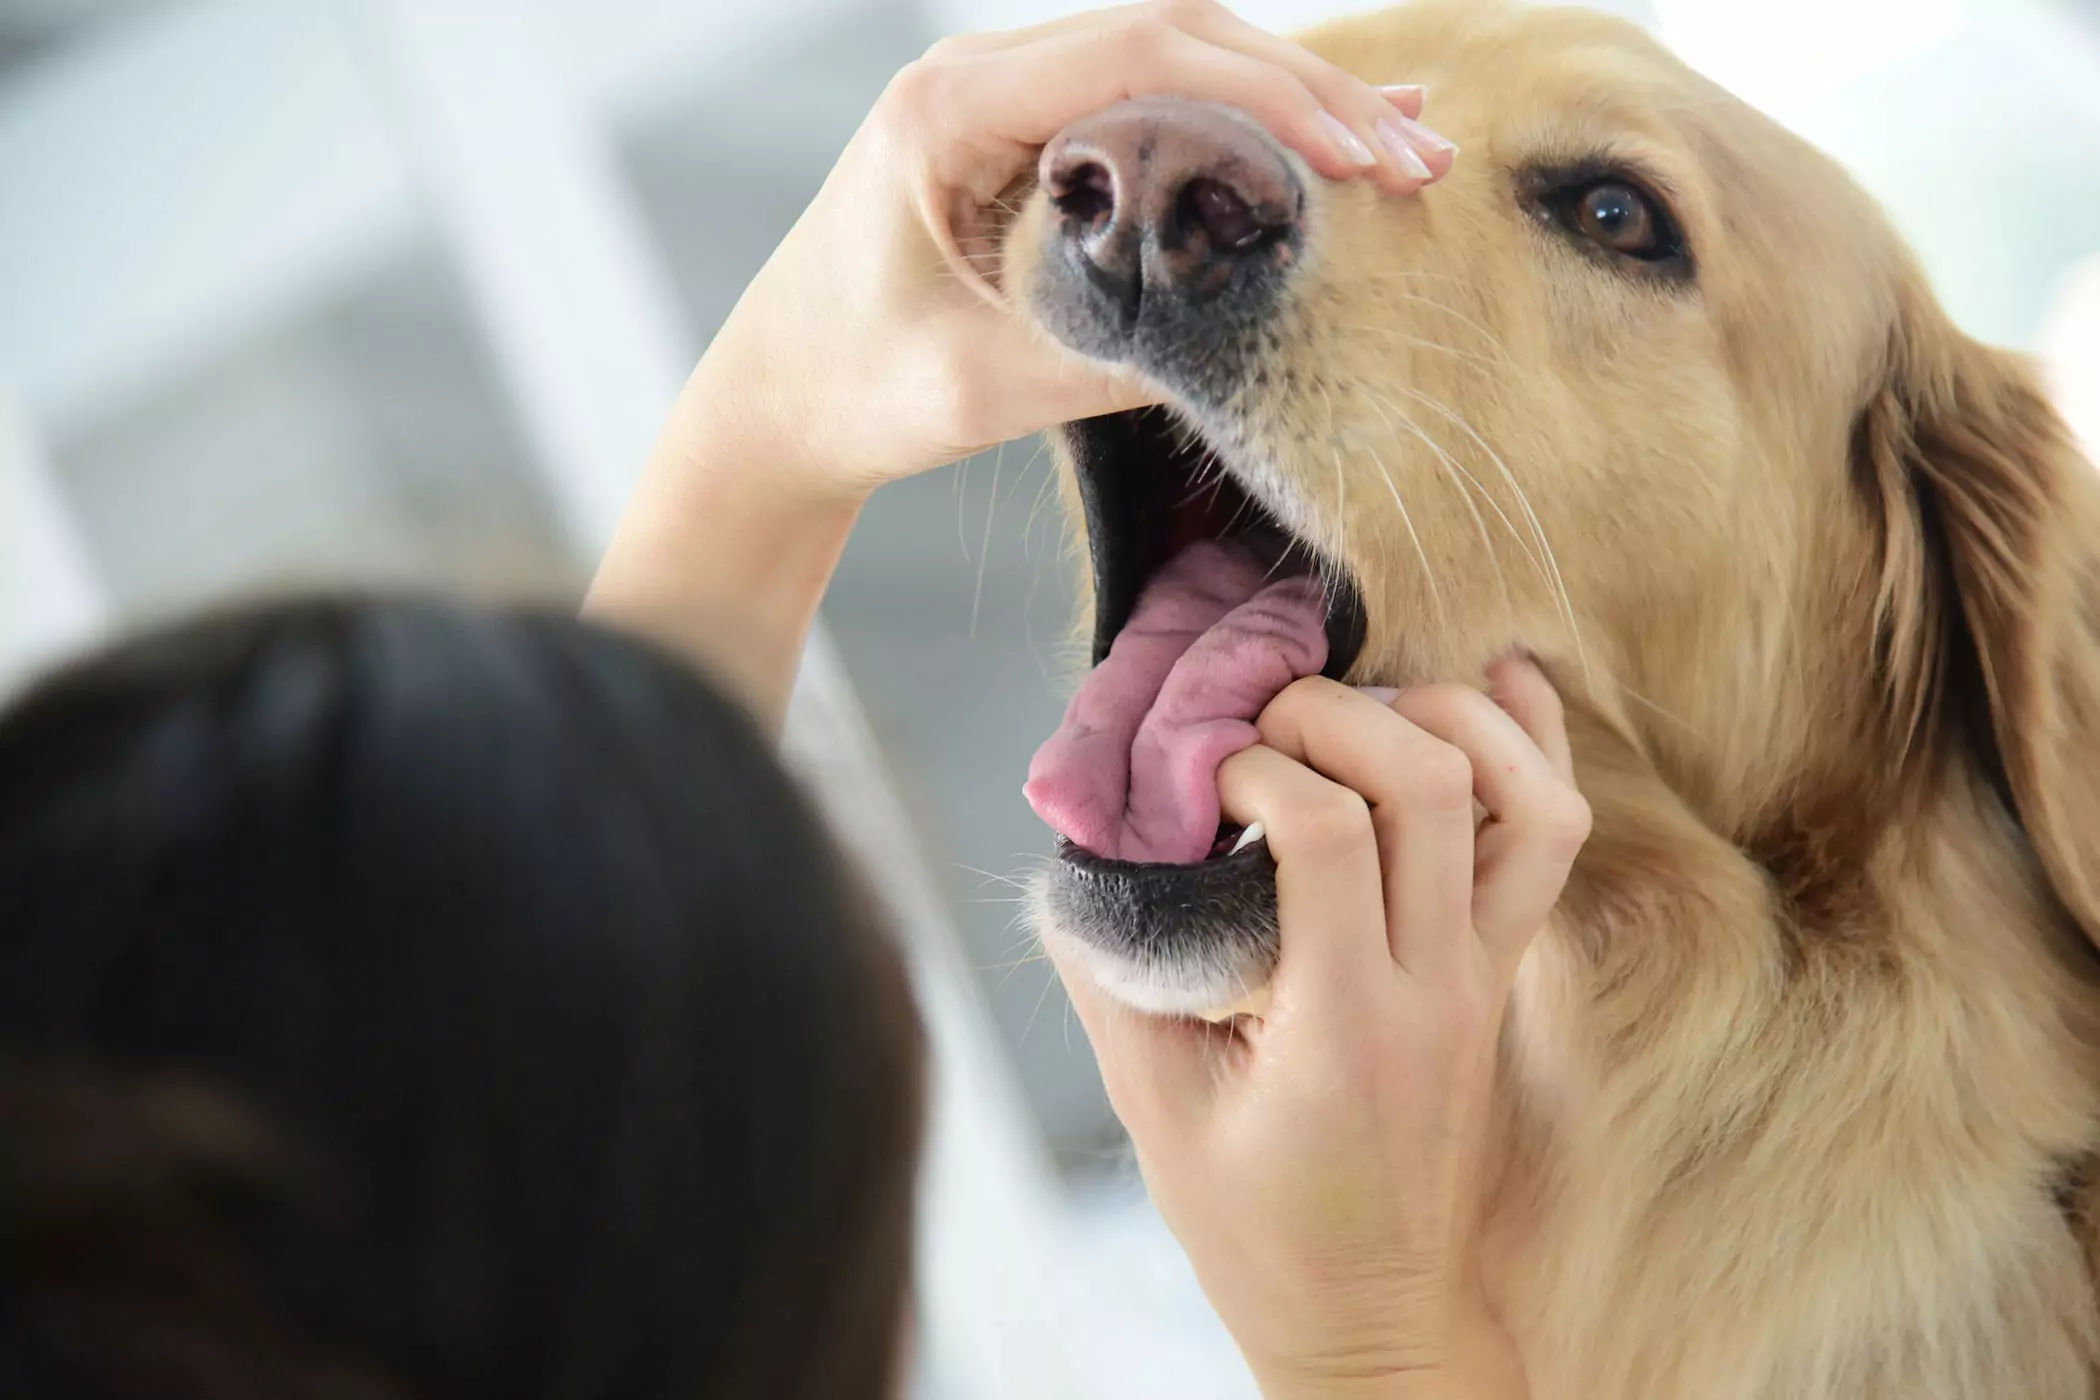 A boca de um cão é mais limpa do que a de um humano? A boca de um cão é mais limpa do que a de um ser humano? Este é um conceito roubado, os dois não são comparáveis